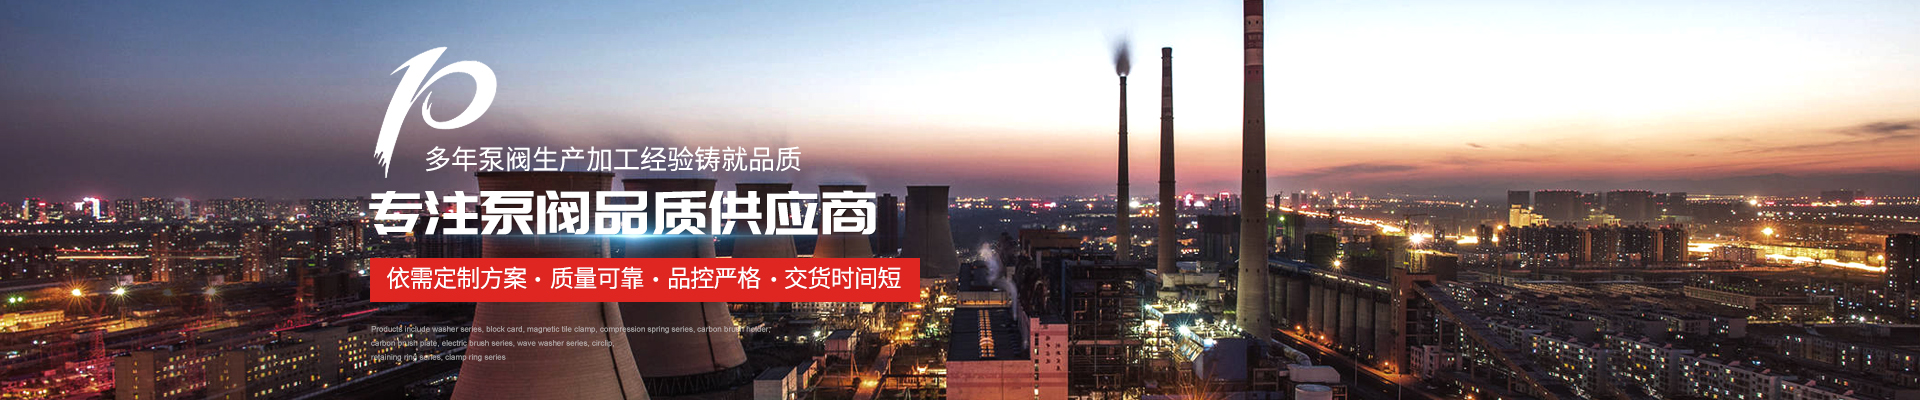 潛水排污泵_污水泵廠家 - 上海高適泵閥有限公司